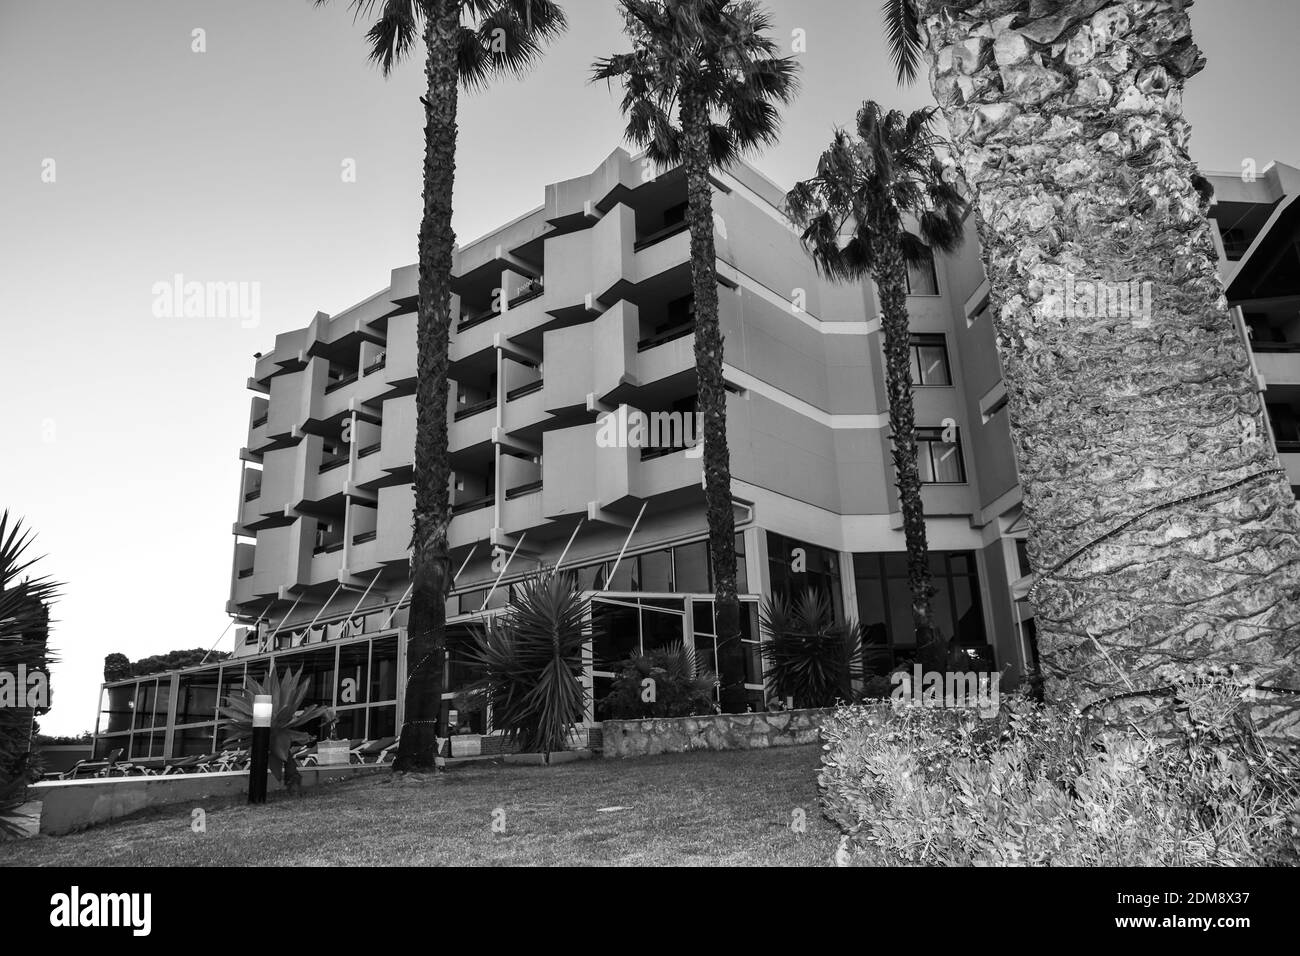 Fachada del hotel en blanco y negro que representa los tiempos oscuros para los turistas Foto de stock